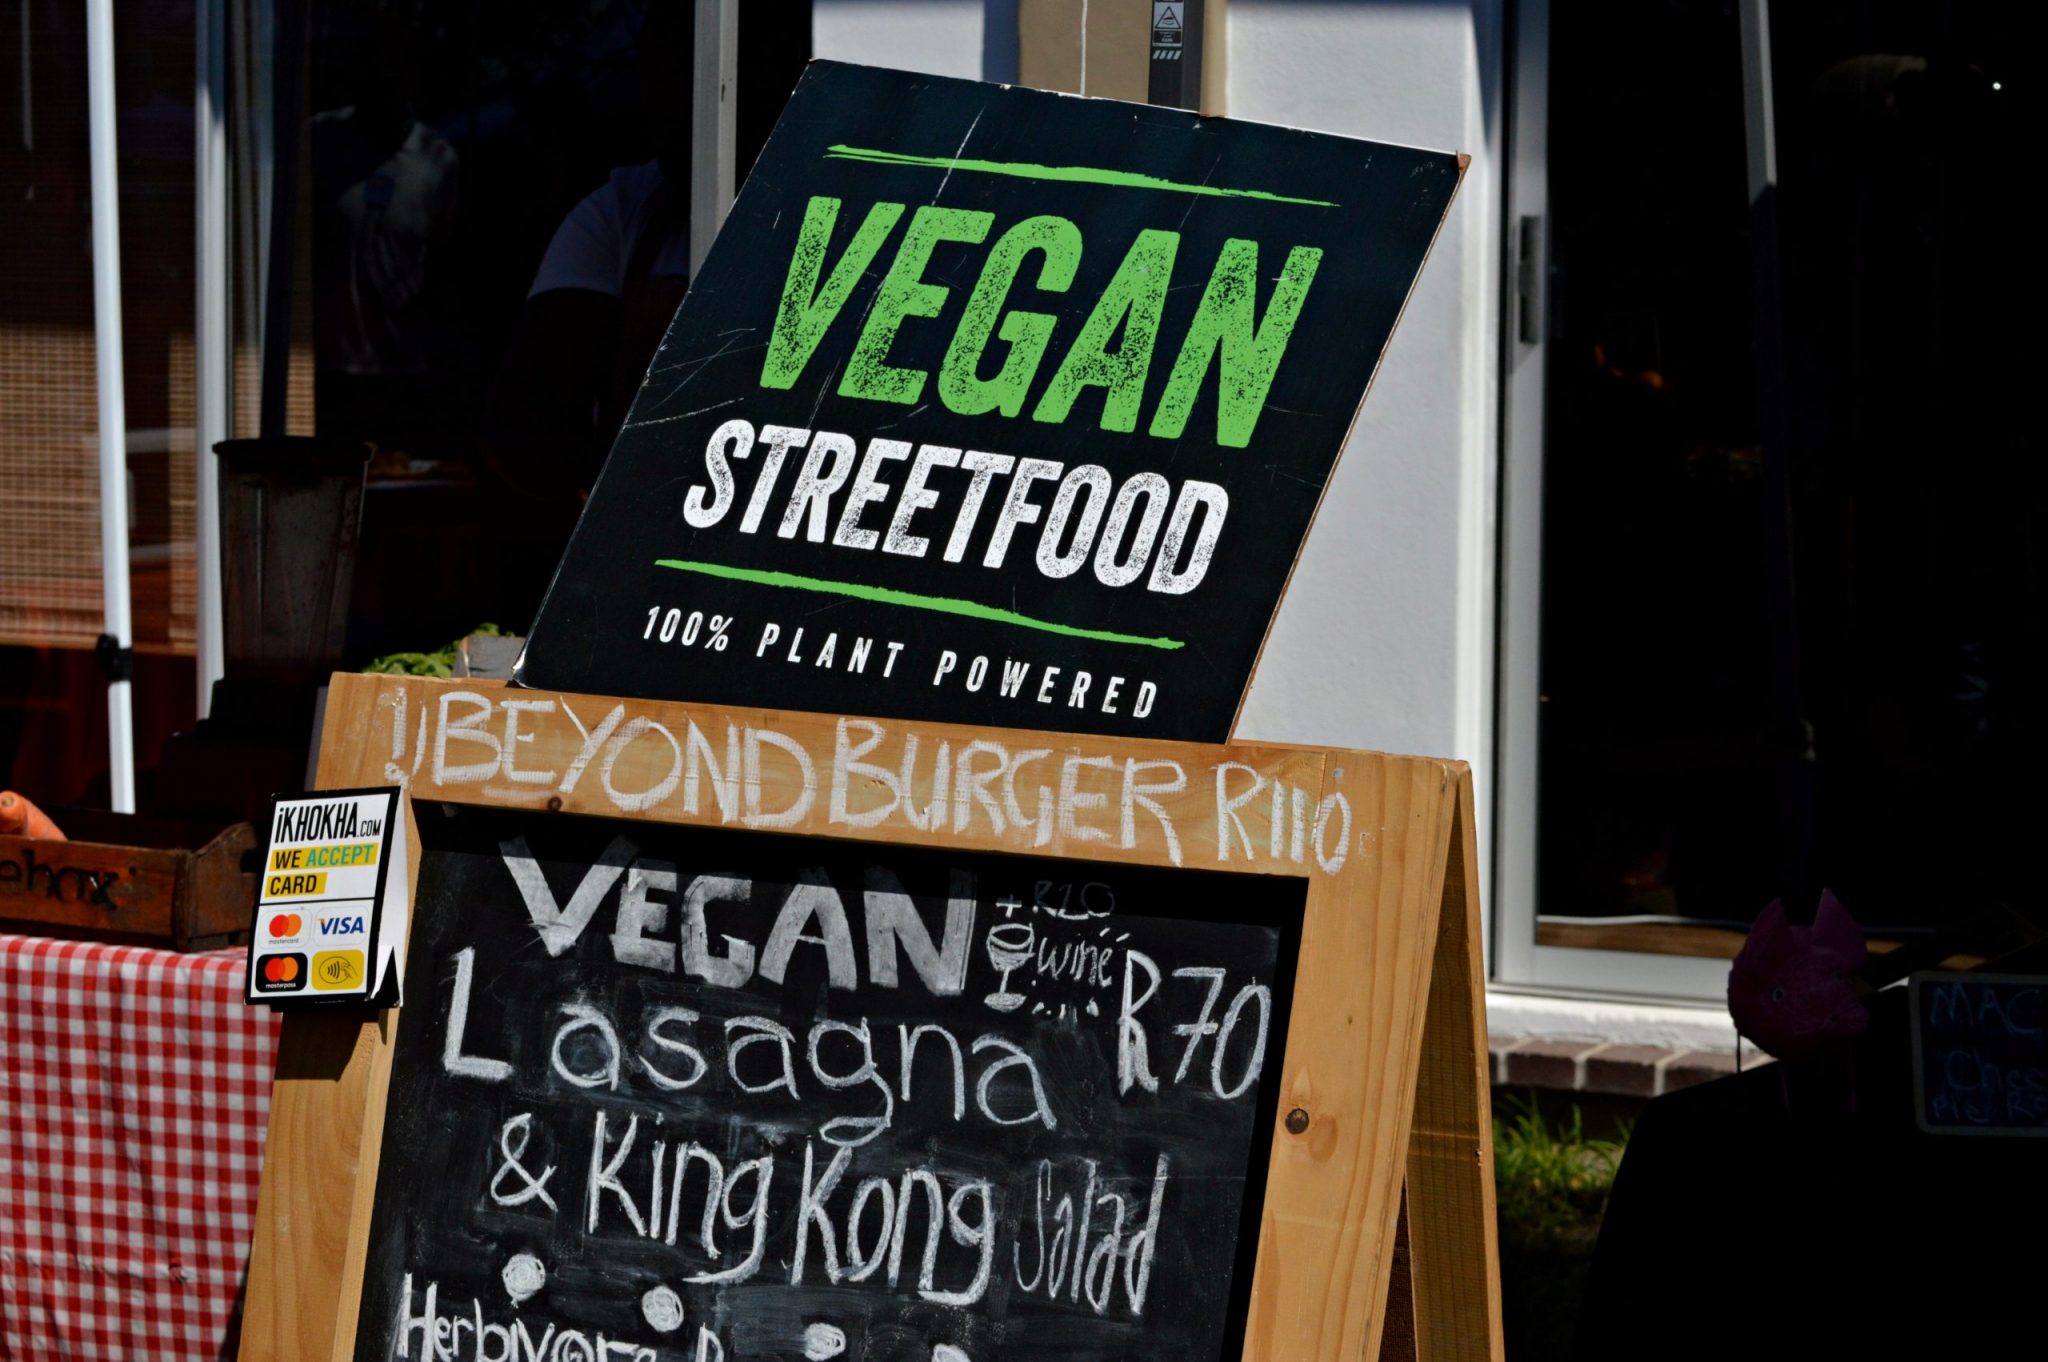 Hit up local vegan restaurants for Veganuary